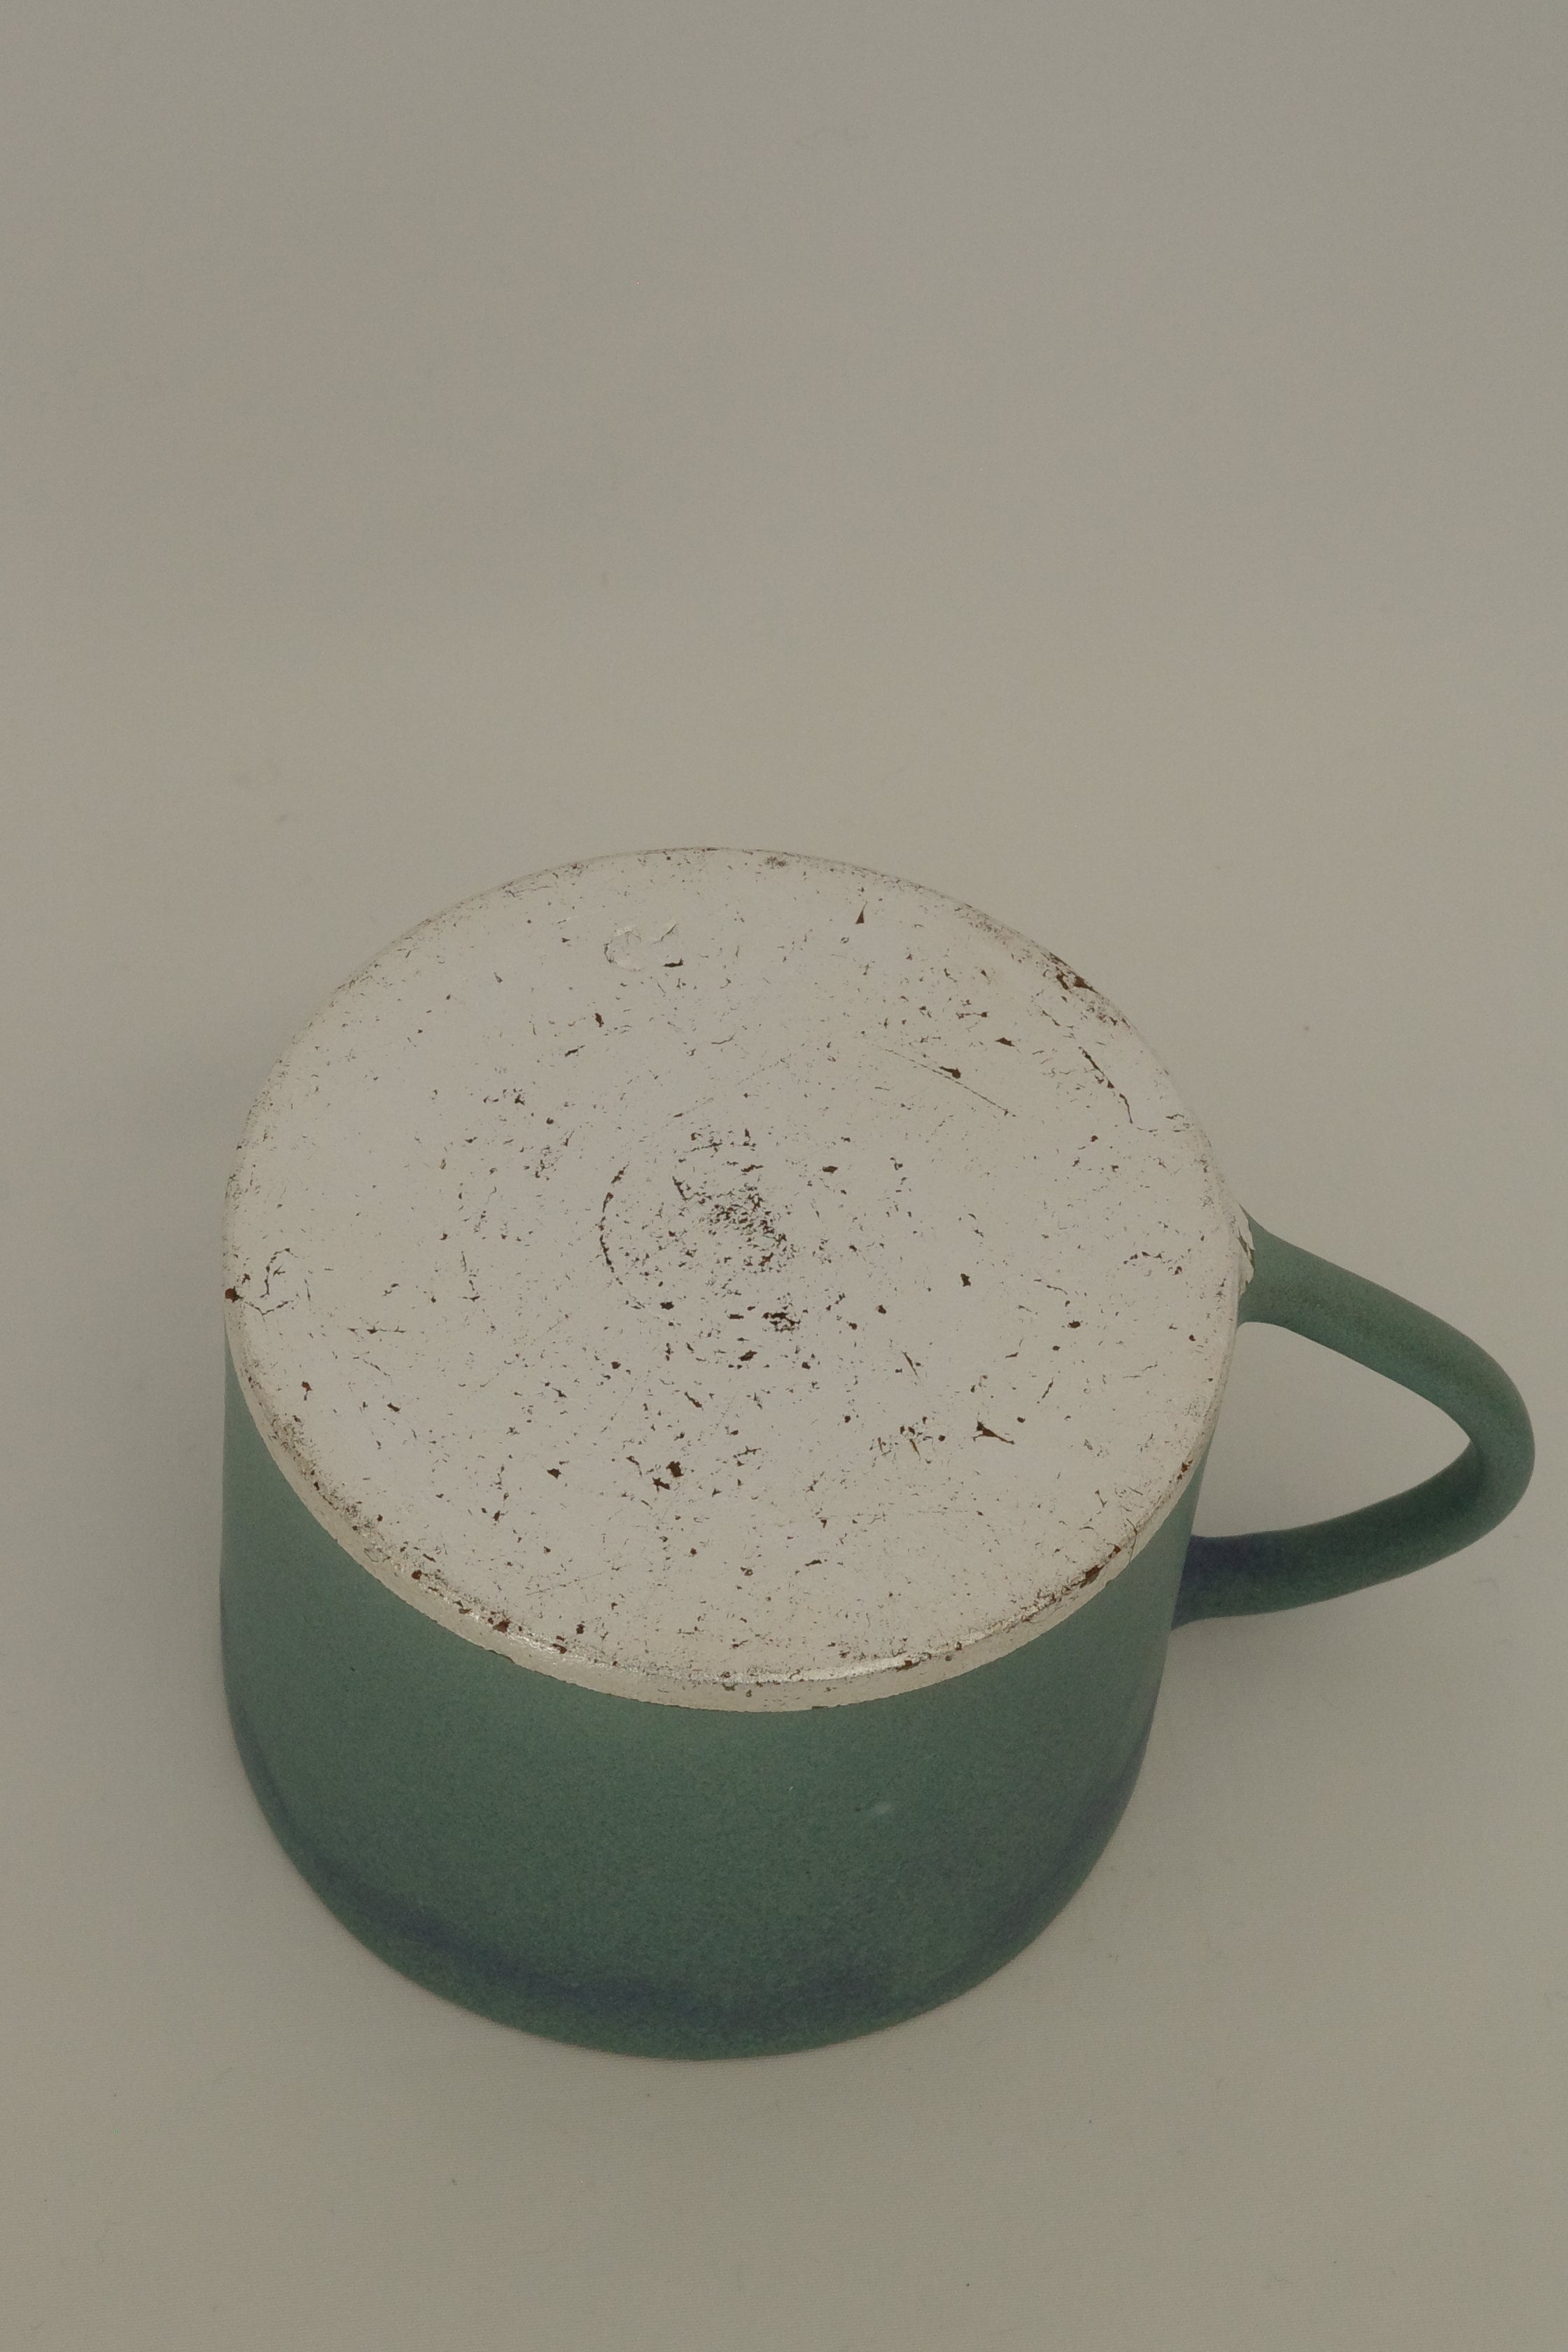 Mug cup